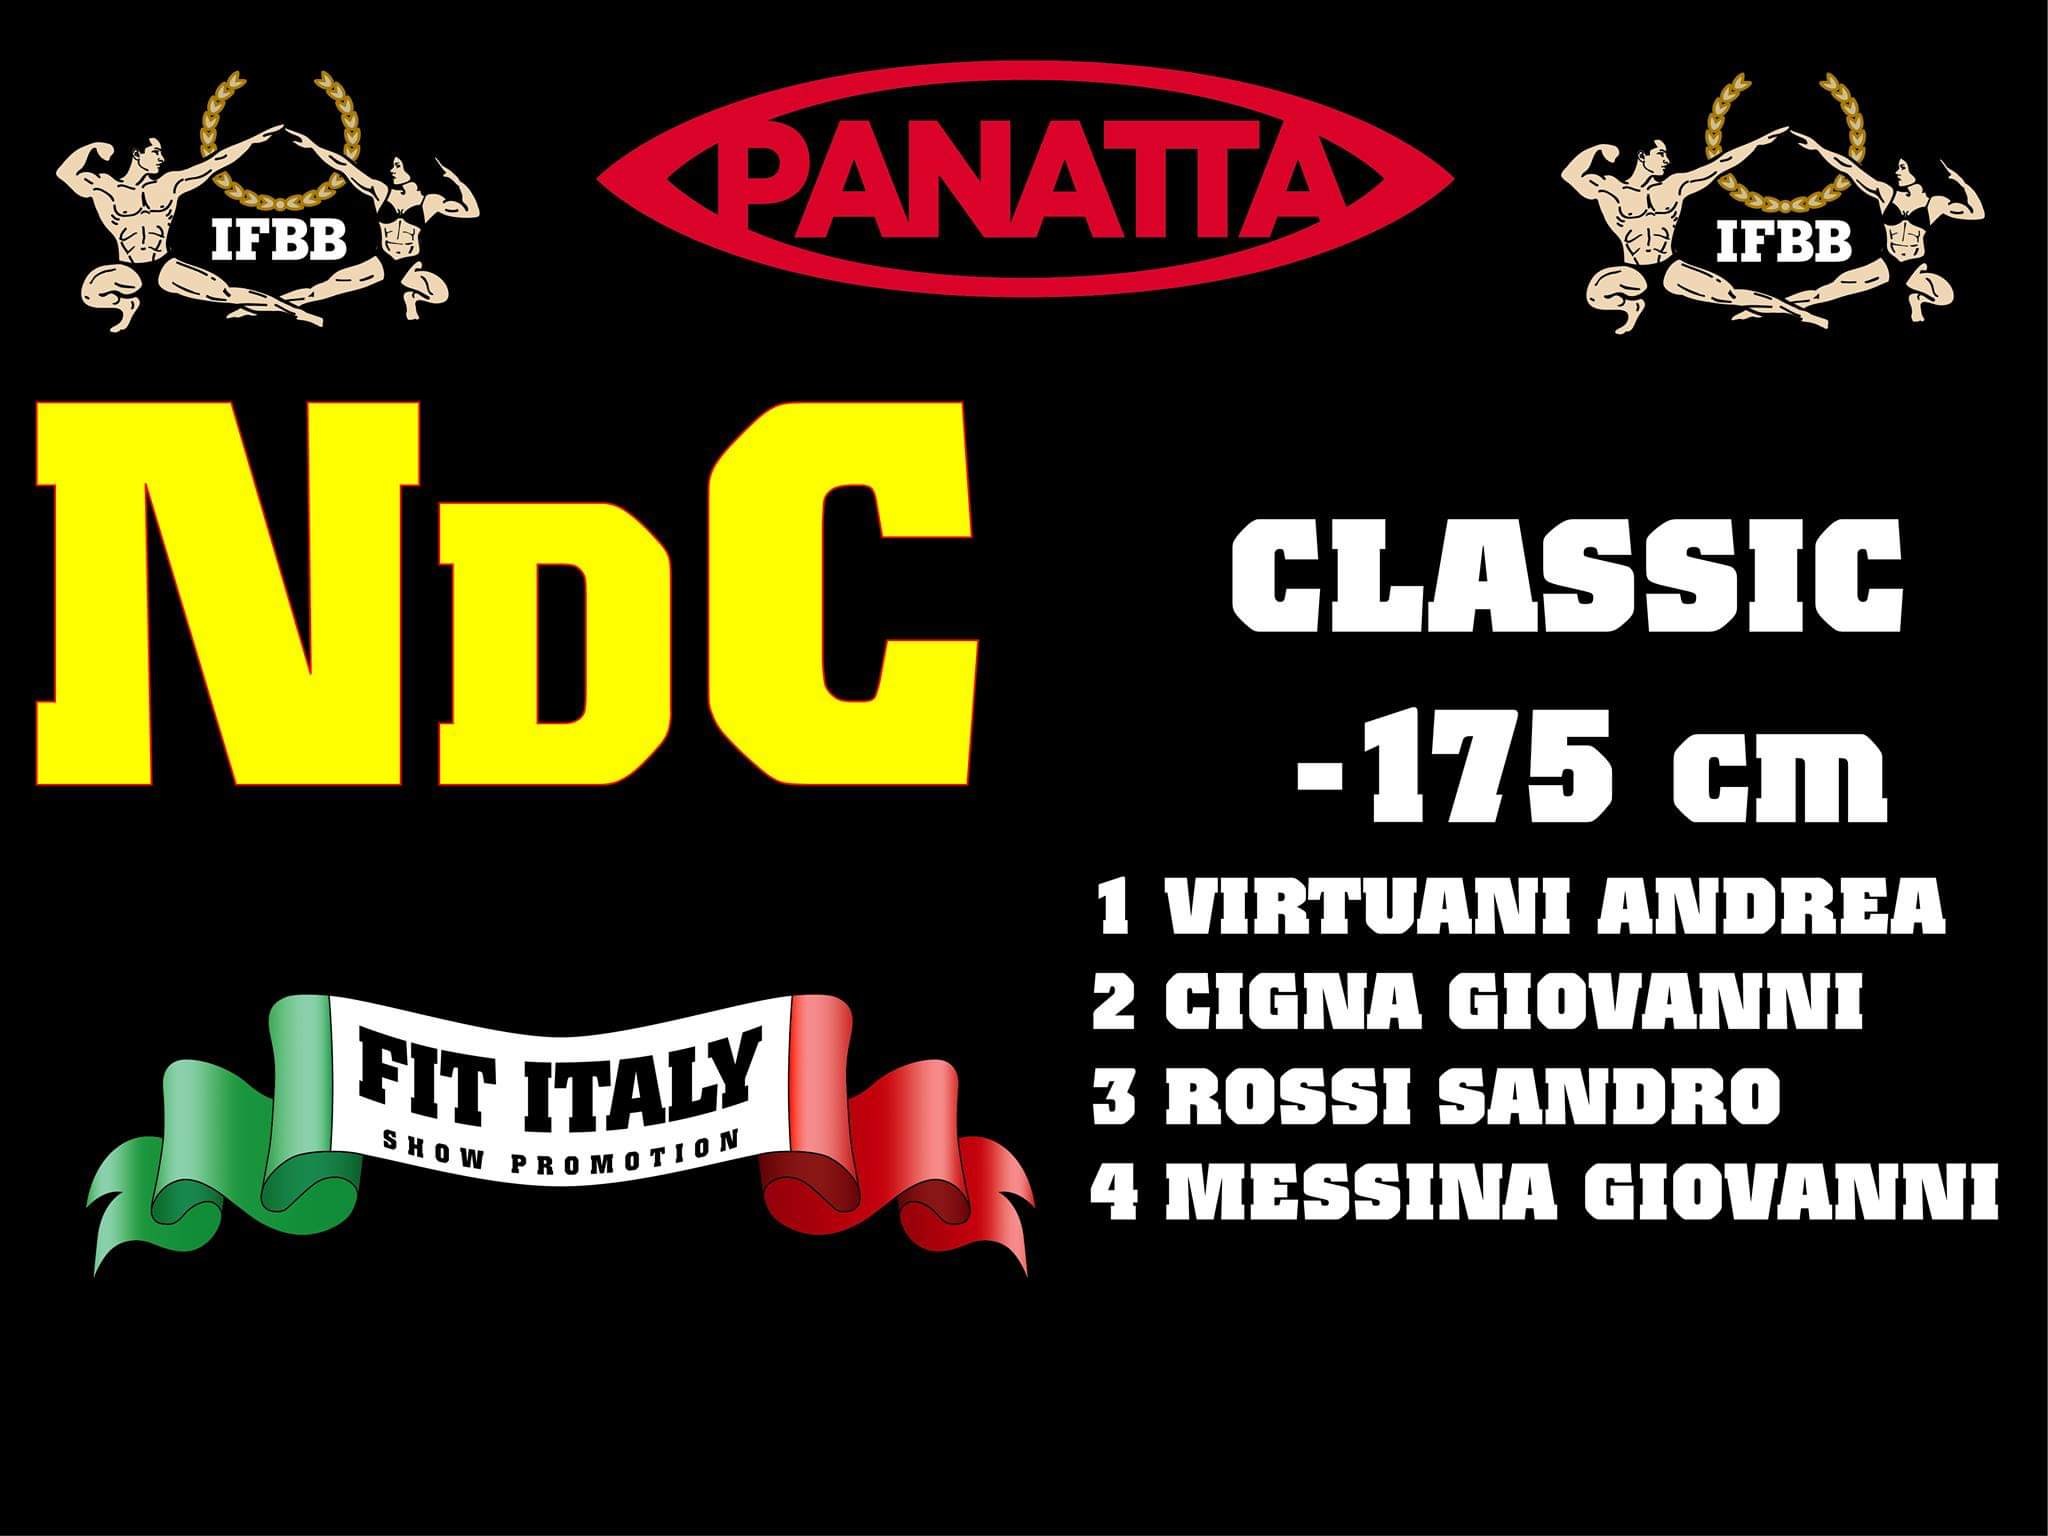 2019 notte dei campioni ifbb italia 2019 classifiche